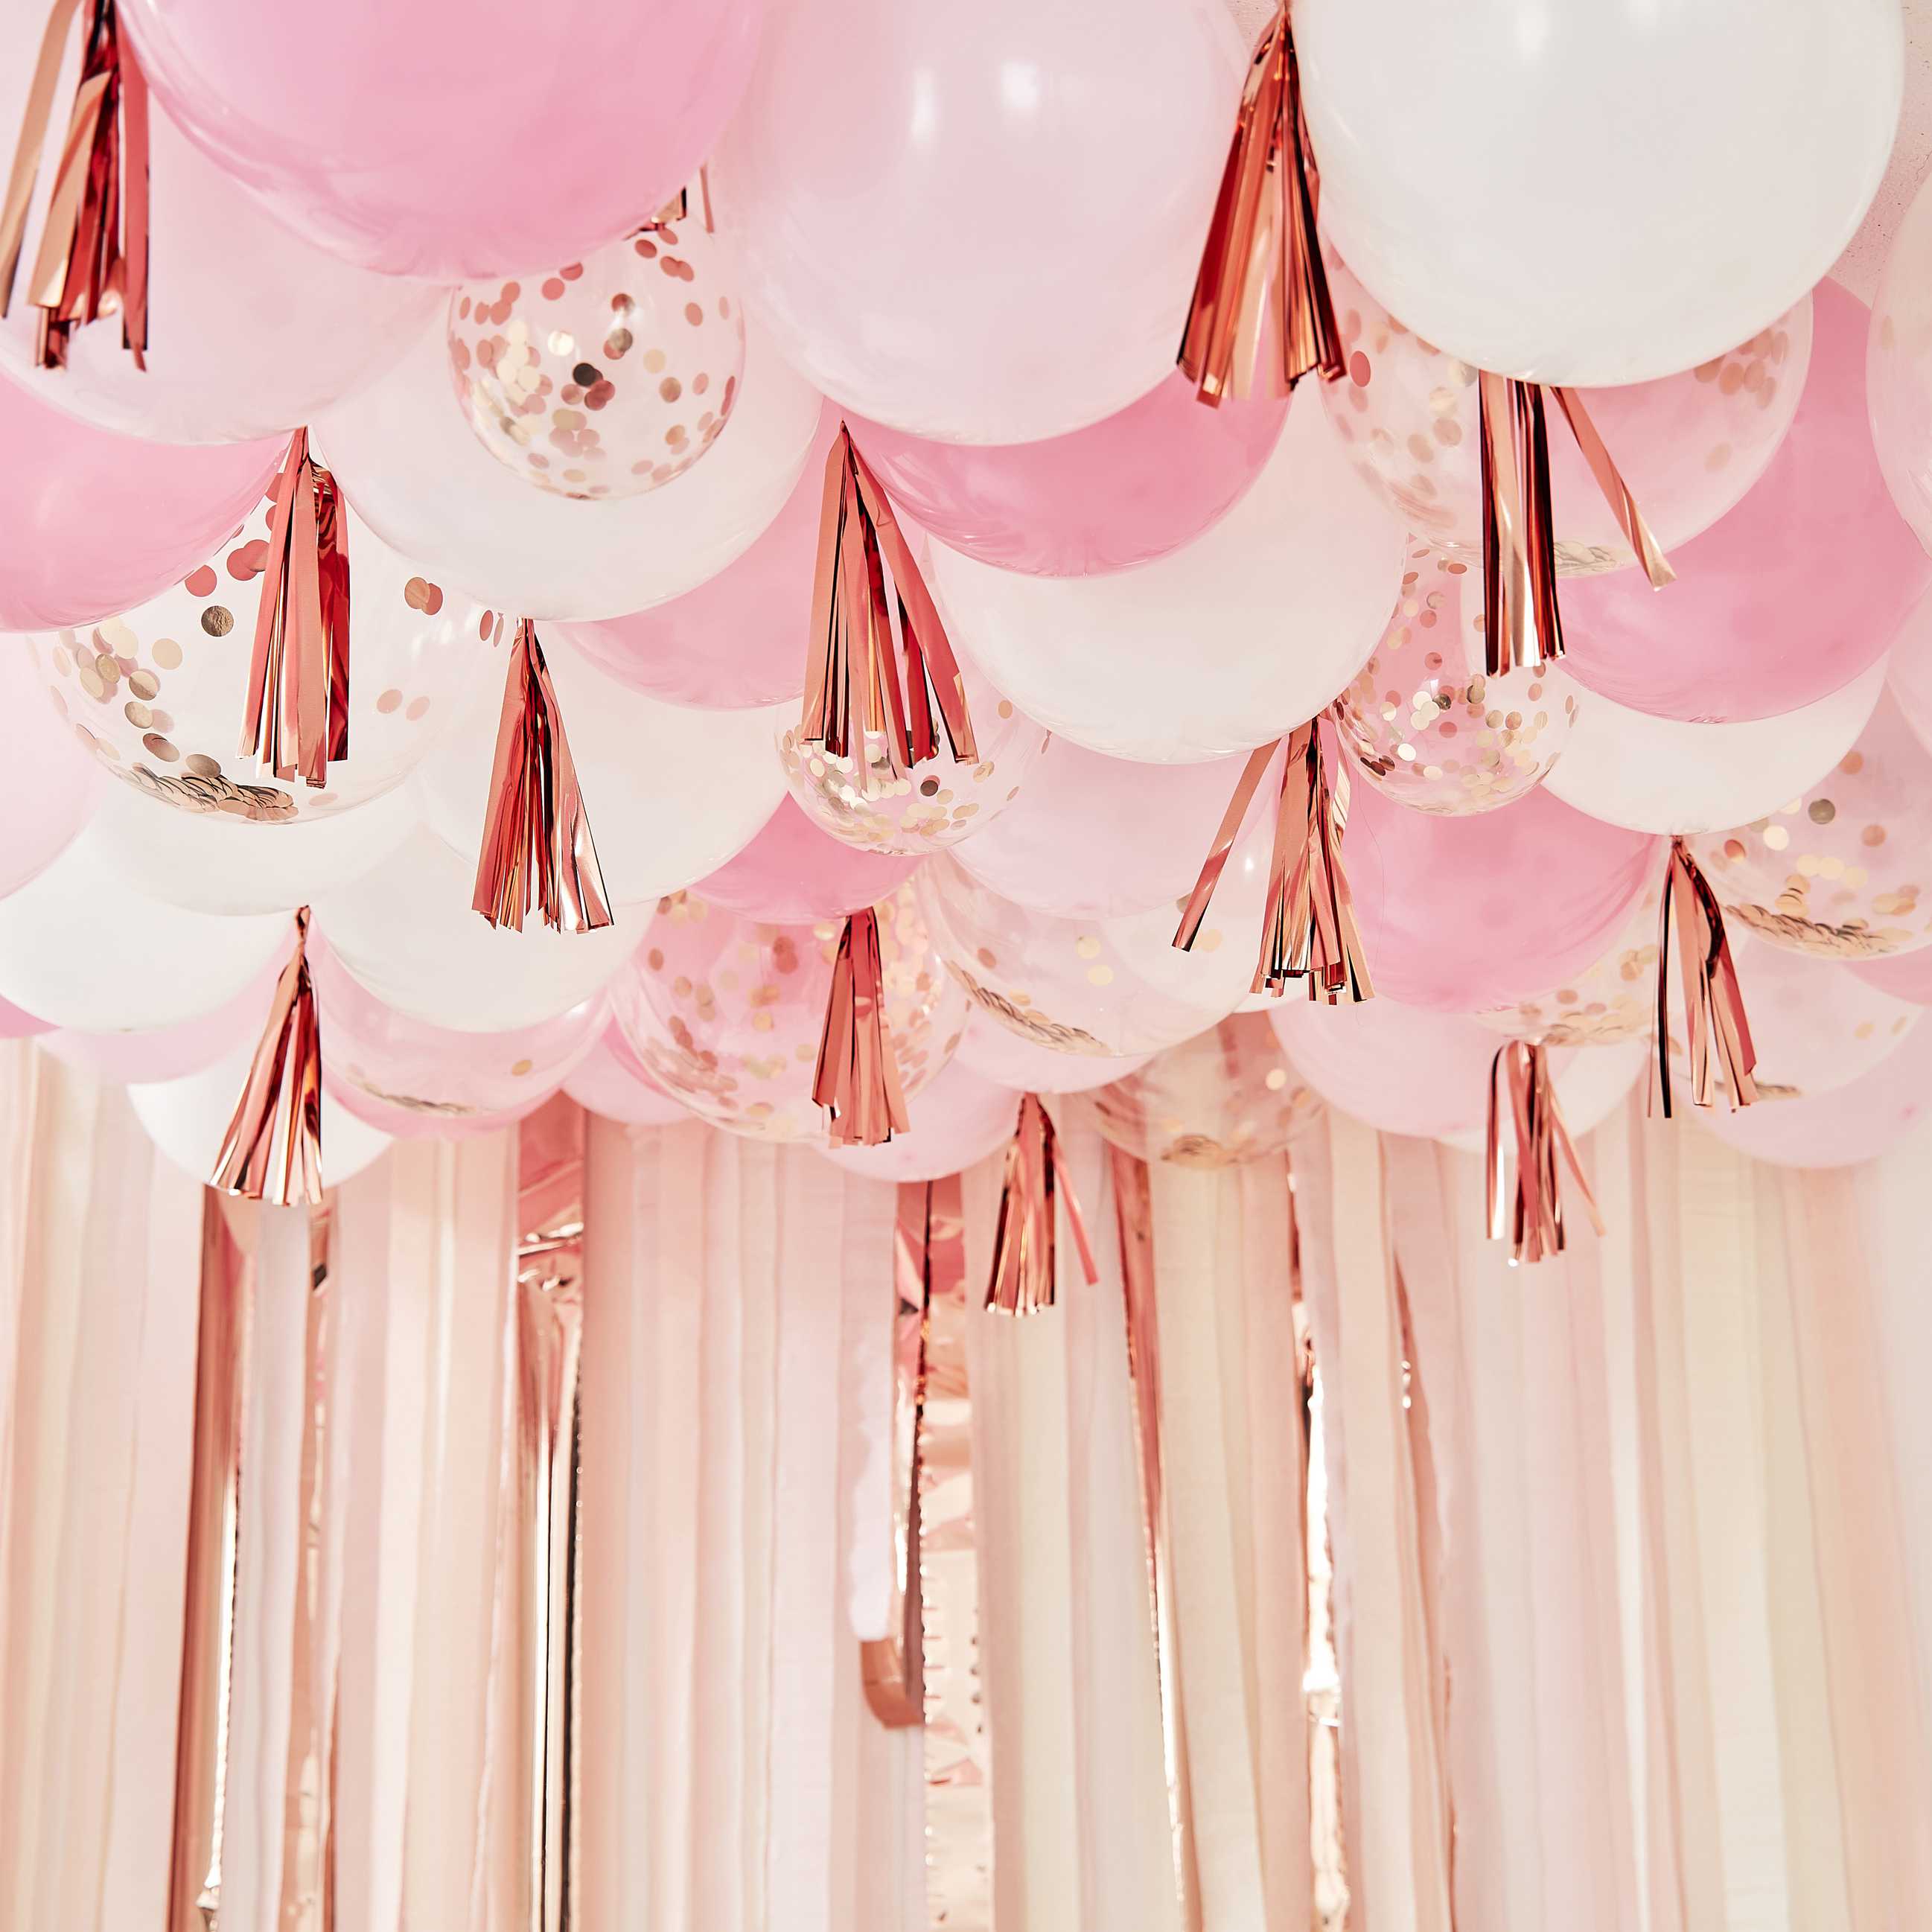 Σετ Μπαλονιών με φουντίτσες σε ροζ αποχρώσεις